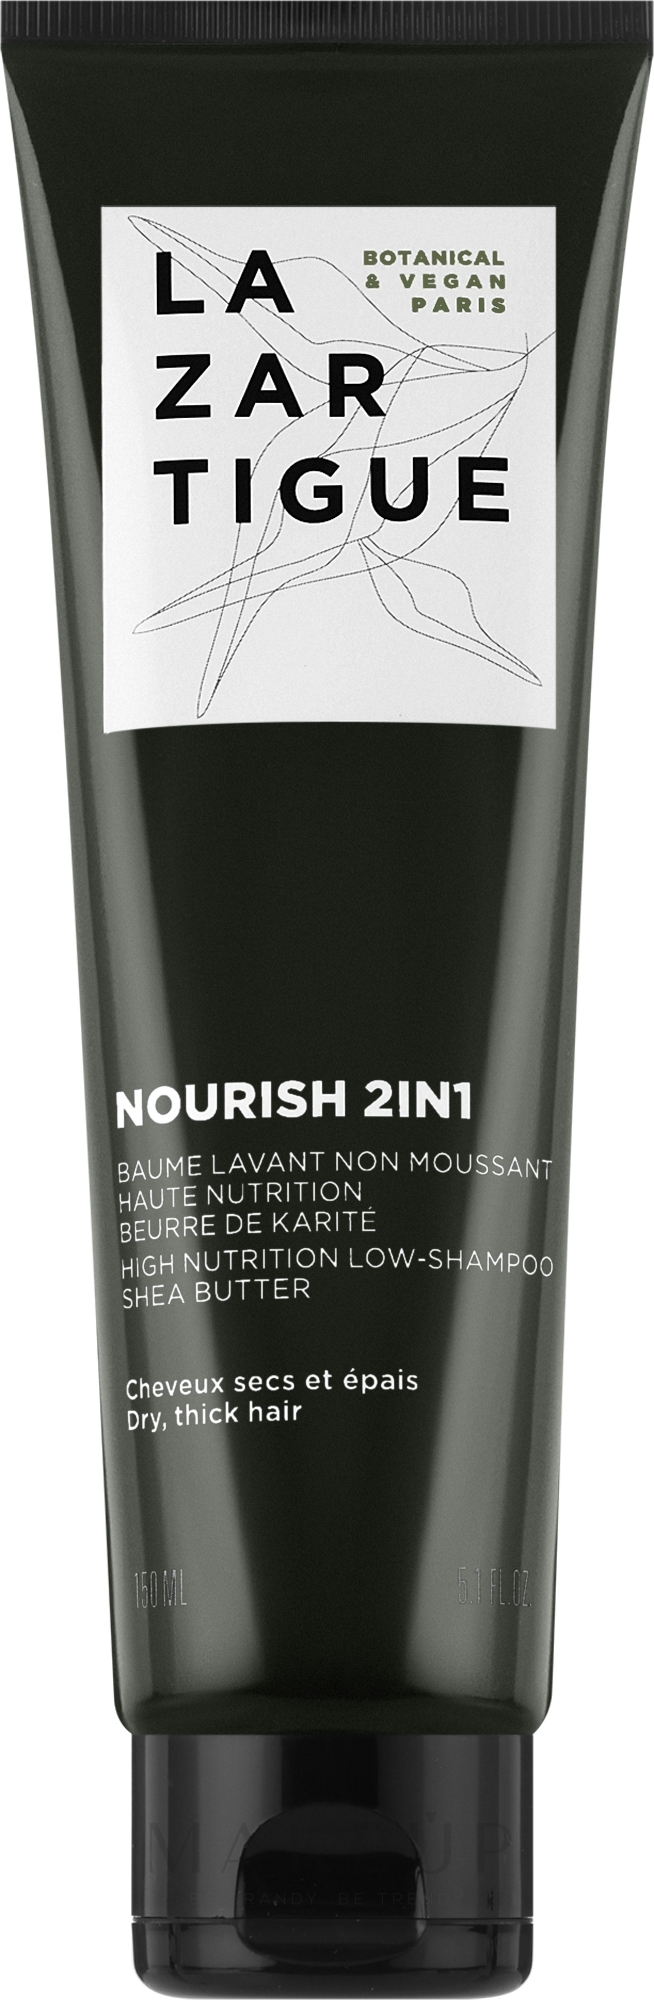 2in1 Pflegendes Shampoo - Lazartigue Nourish 2in1 High Nutrition Low-Shampoo — Bild 150 ml